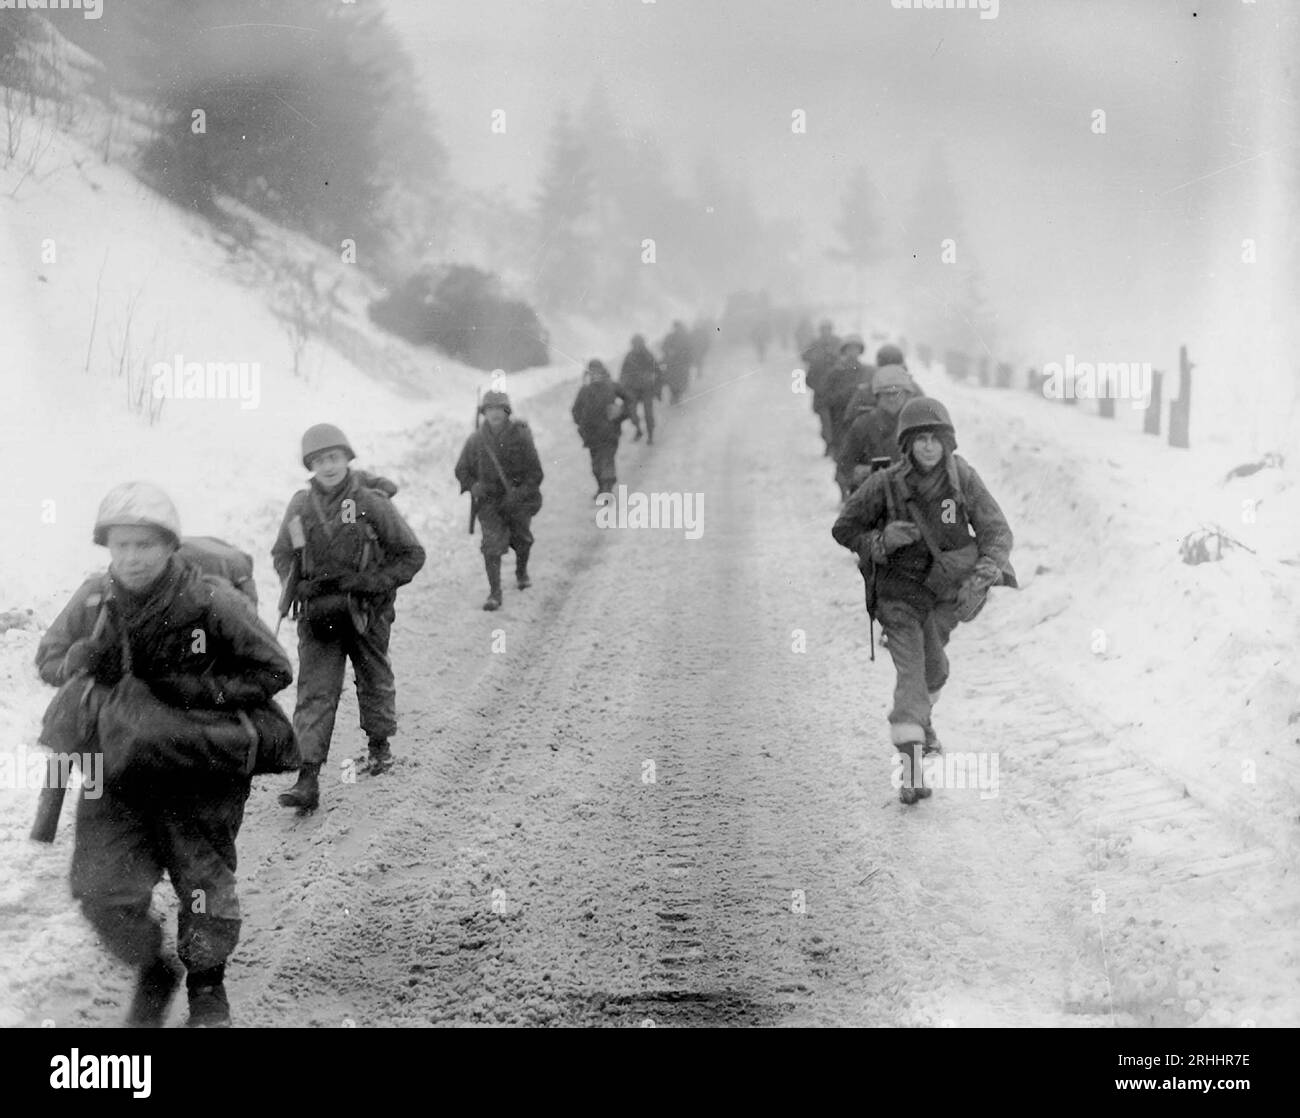 VICINO A MURRINGEN, BELGIO - 31 gennaio 1945 - le truppe dell'esercito americano della 1a Divisione marciano attraverso la neve verso Murringen, Belgio, dopo un importante co tedesco Foto Stock